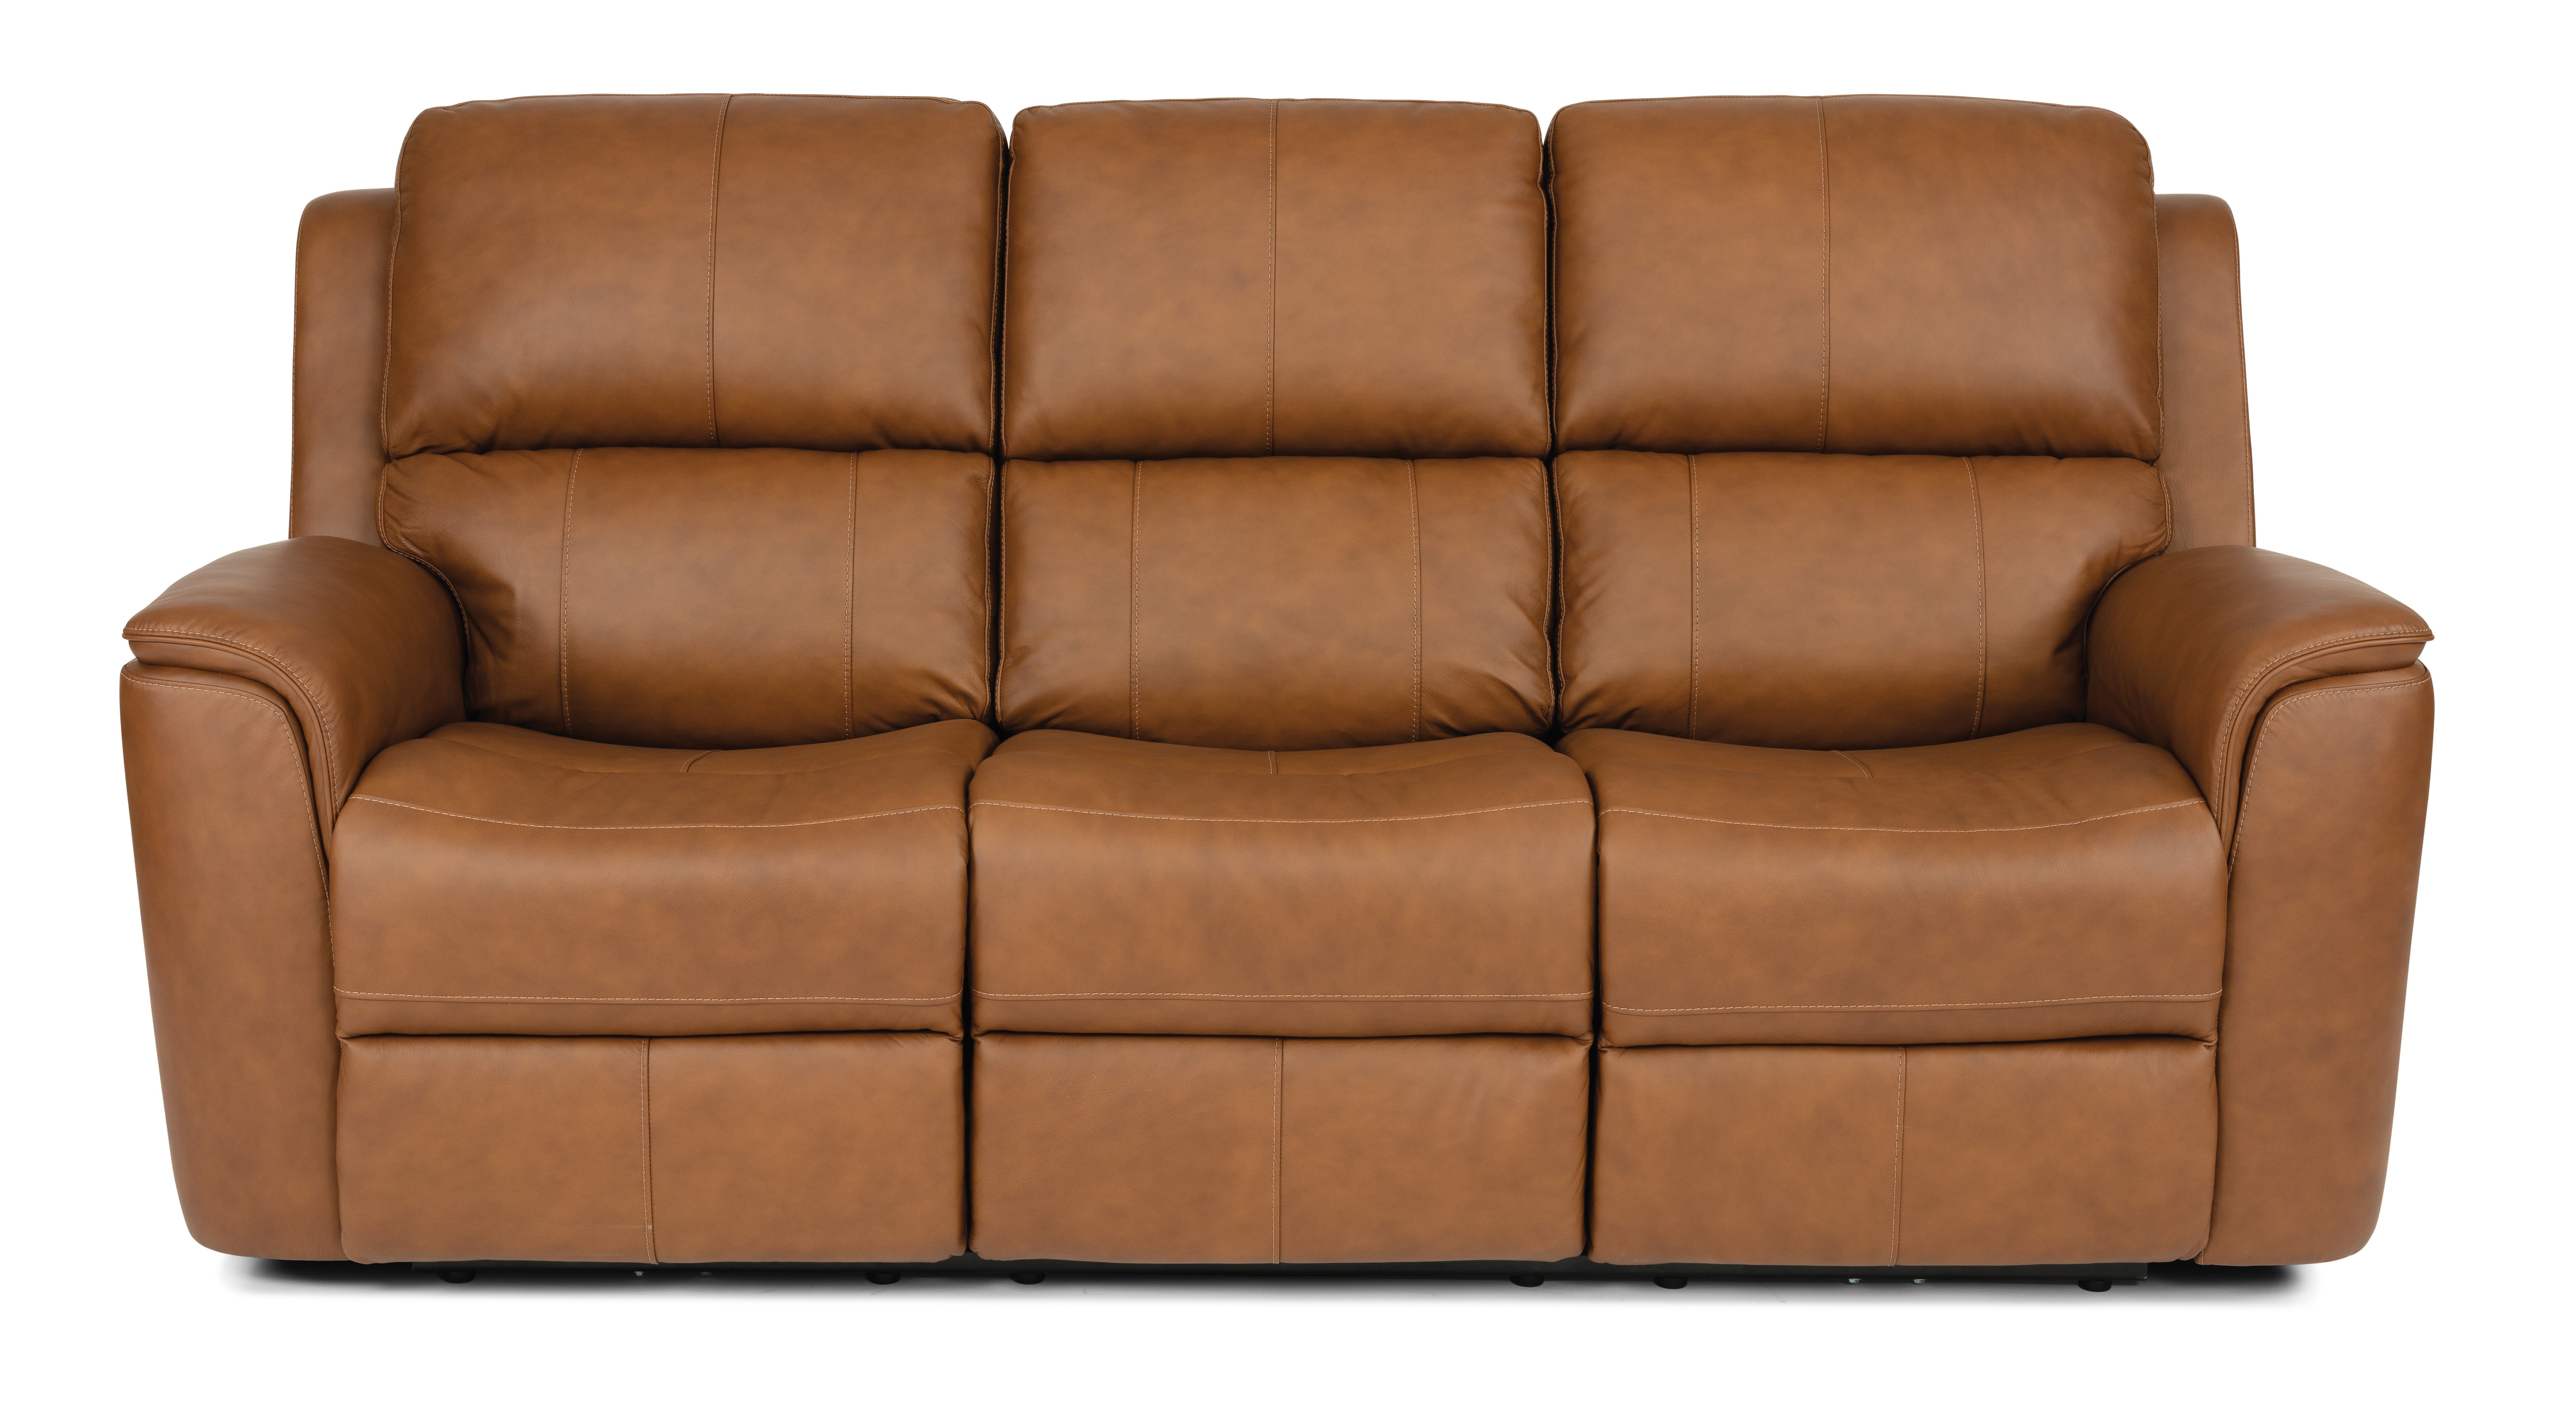 Flexsteel Henry Tan Leather Power Recline Sofa - Best